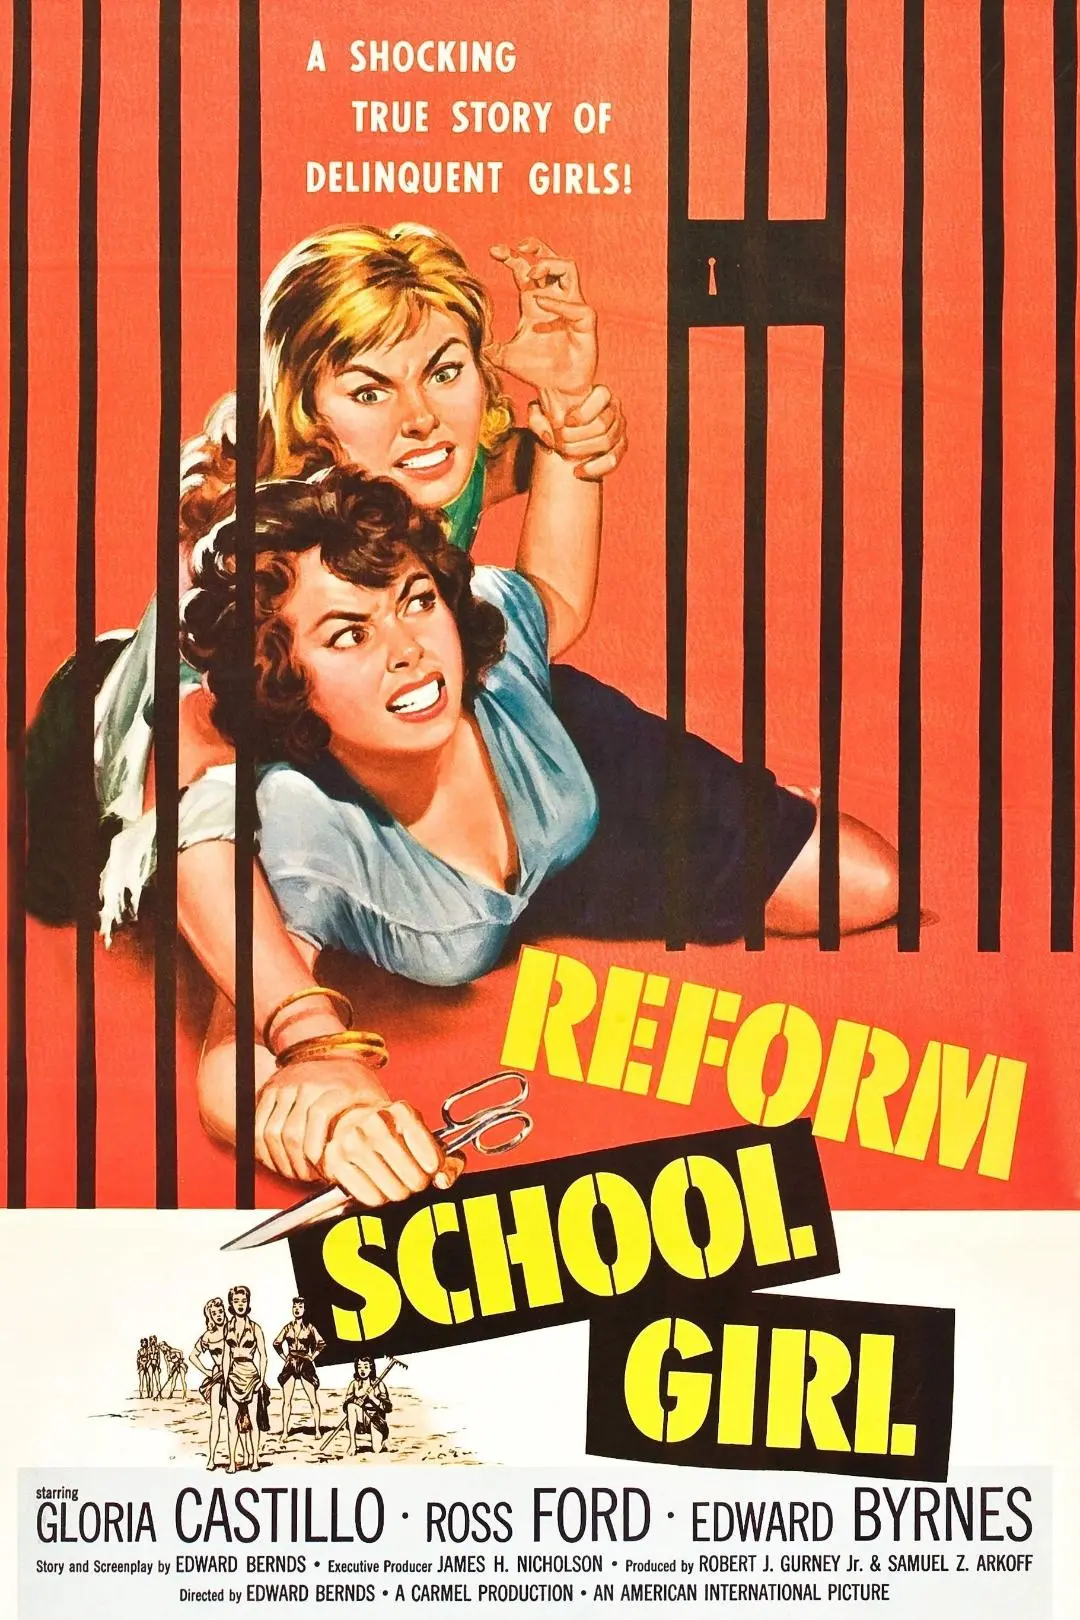 Reform School Girl_peliplat